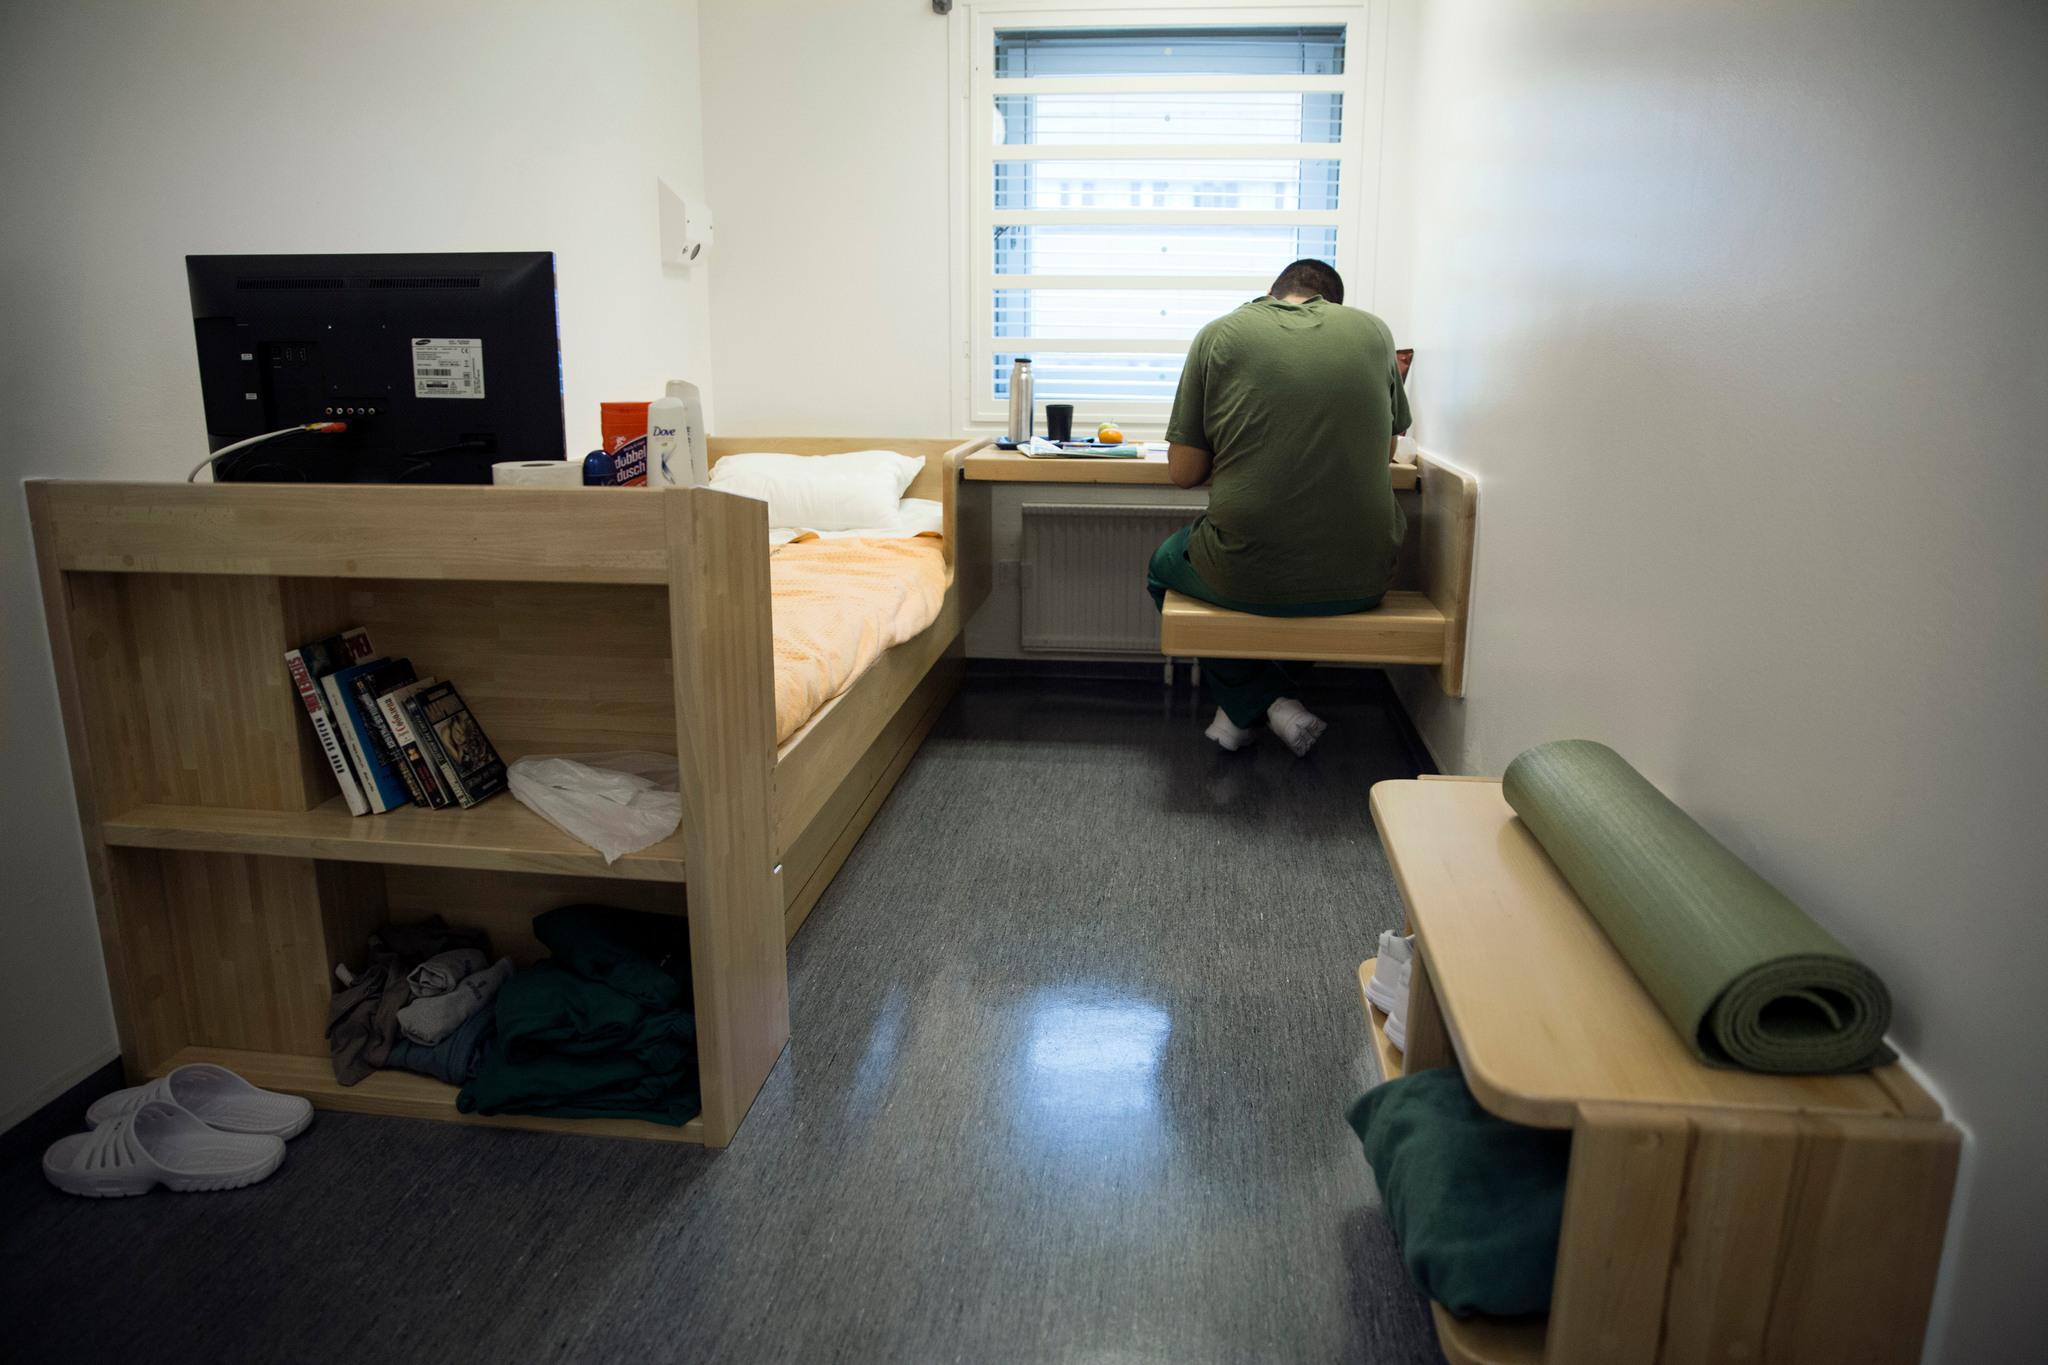 Камера в шведской тюрьме. Шведское правосудие считает снижение рецидива одной из своих основных задач.